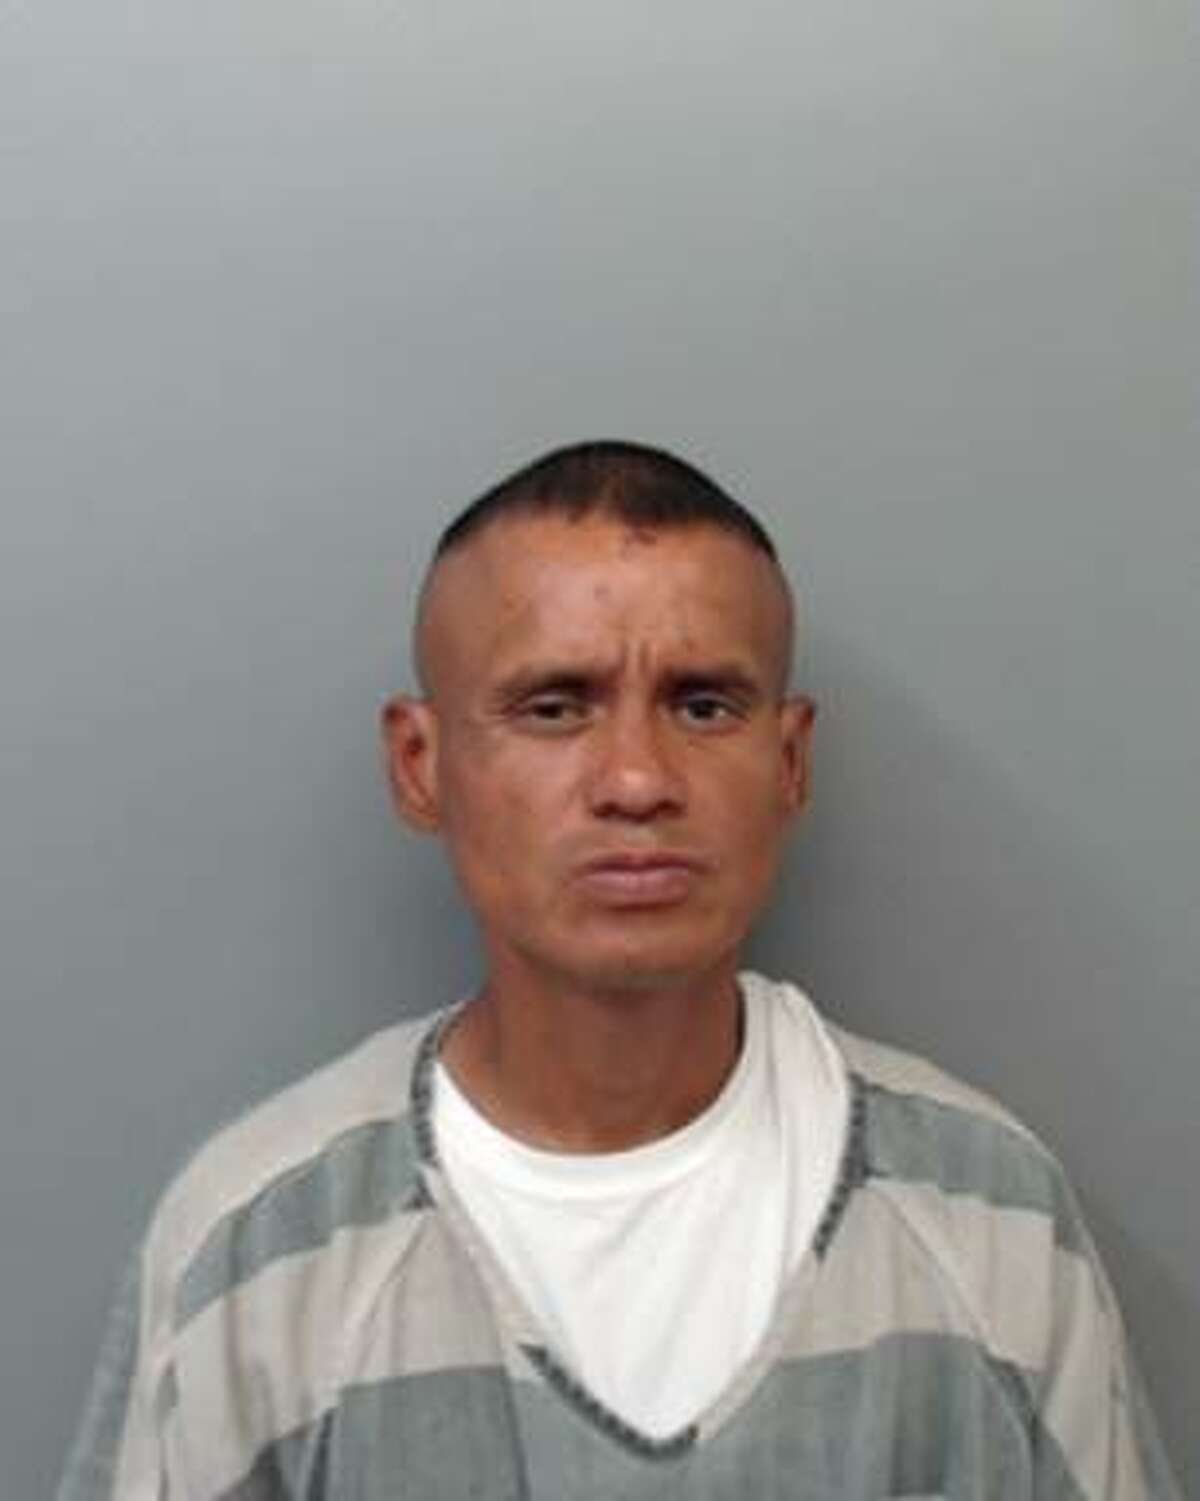 Arturo Granados, 41. Criminal Trespass, Theft of Property.